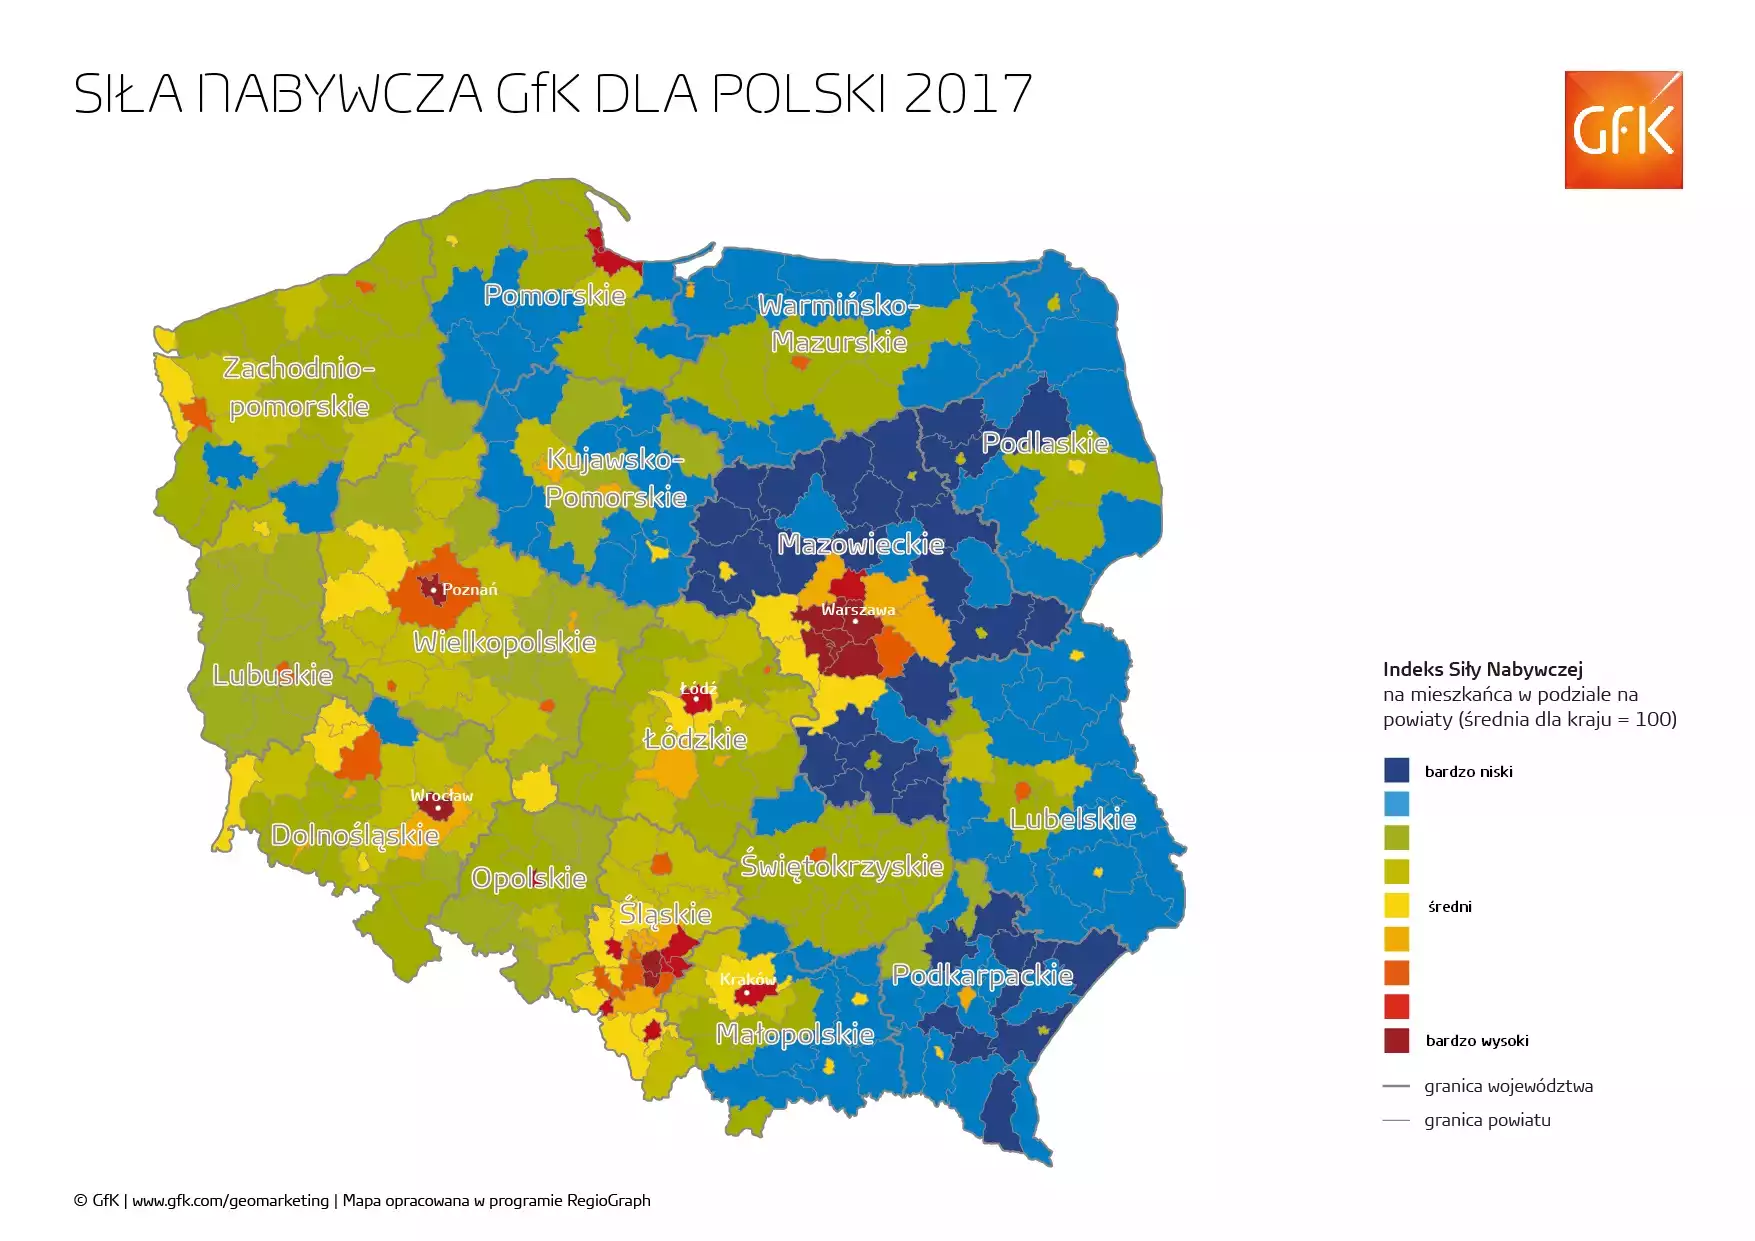 Indeks siły nabywczej na mieszkańca w Polsce